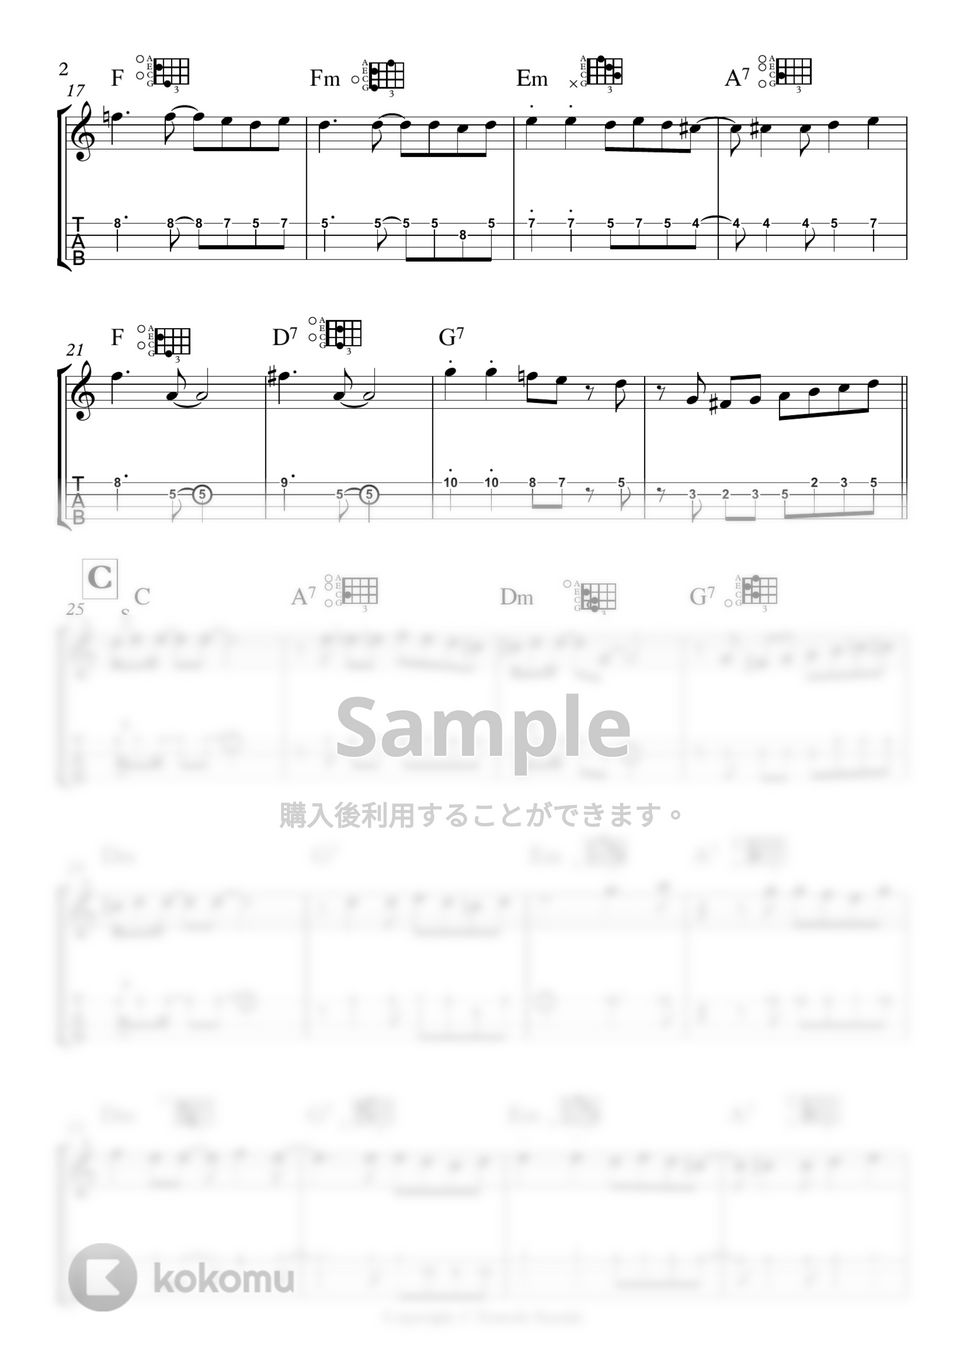 鈴木智貴 - 渚のダンスホール(メロディー譜)